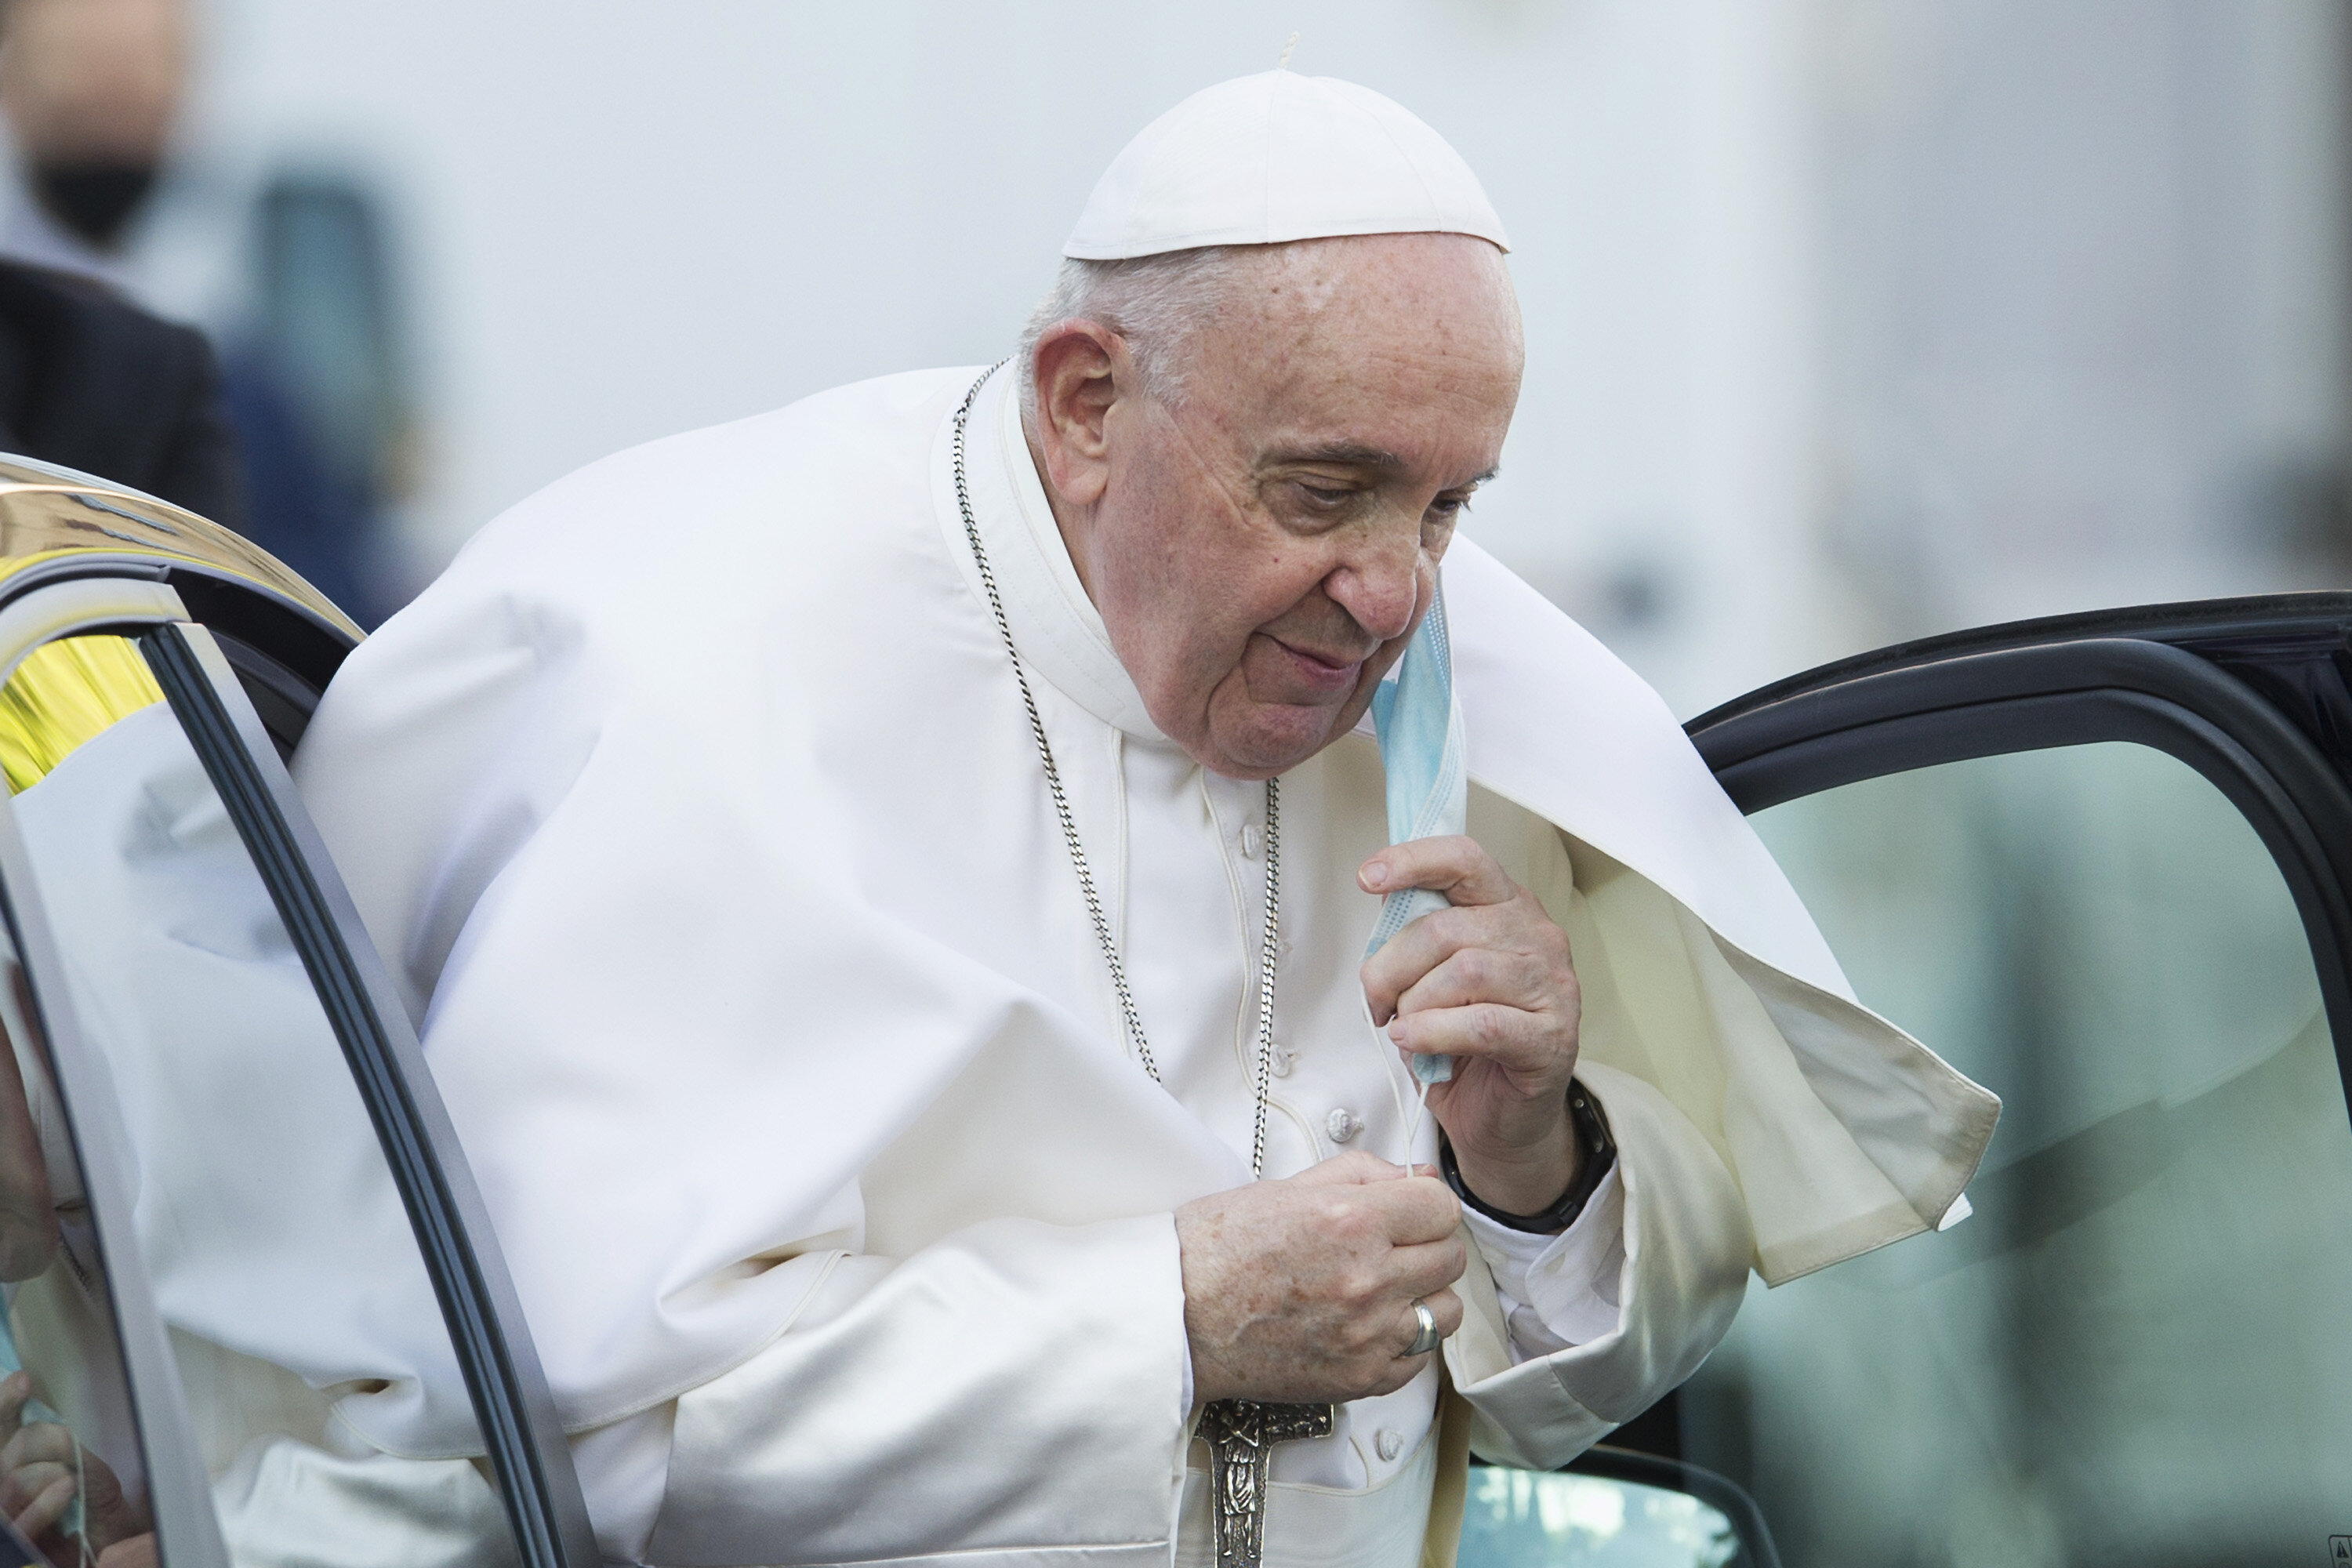 El papa establece en una histórica reforma que los abusos a menores son delitos contra la dignidad humana